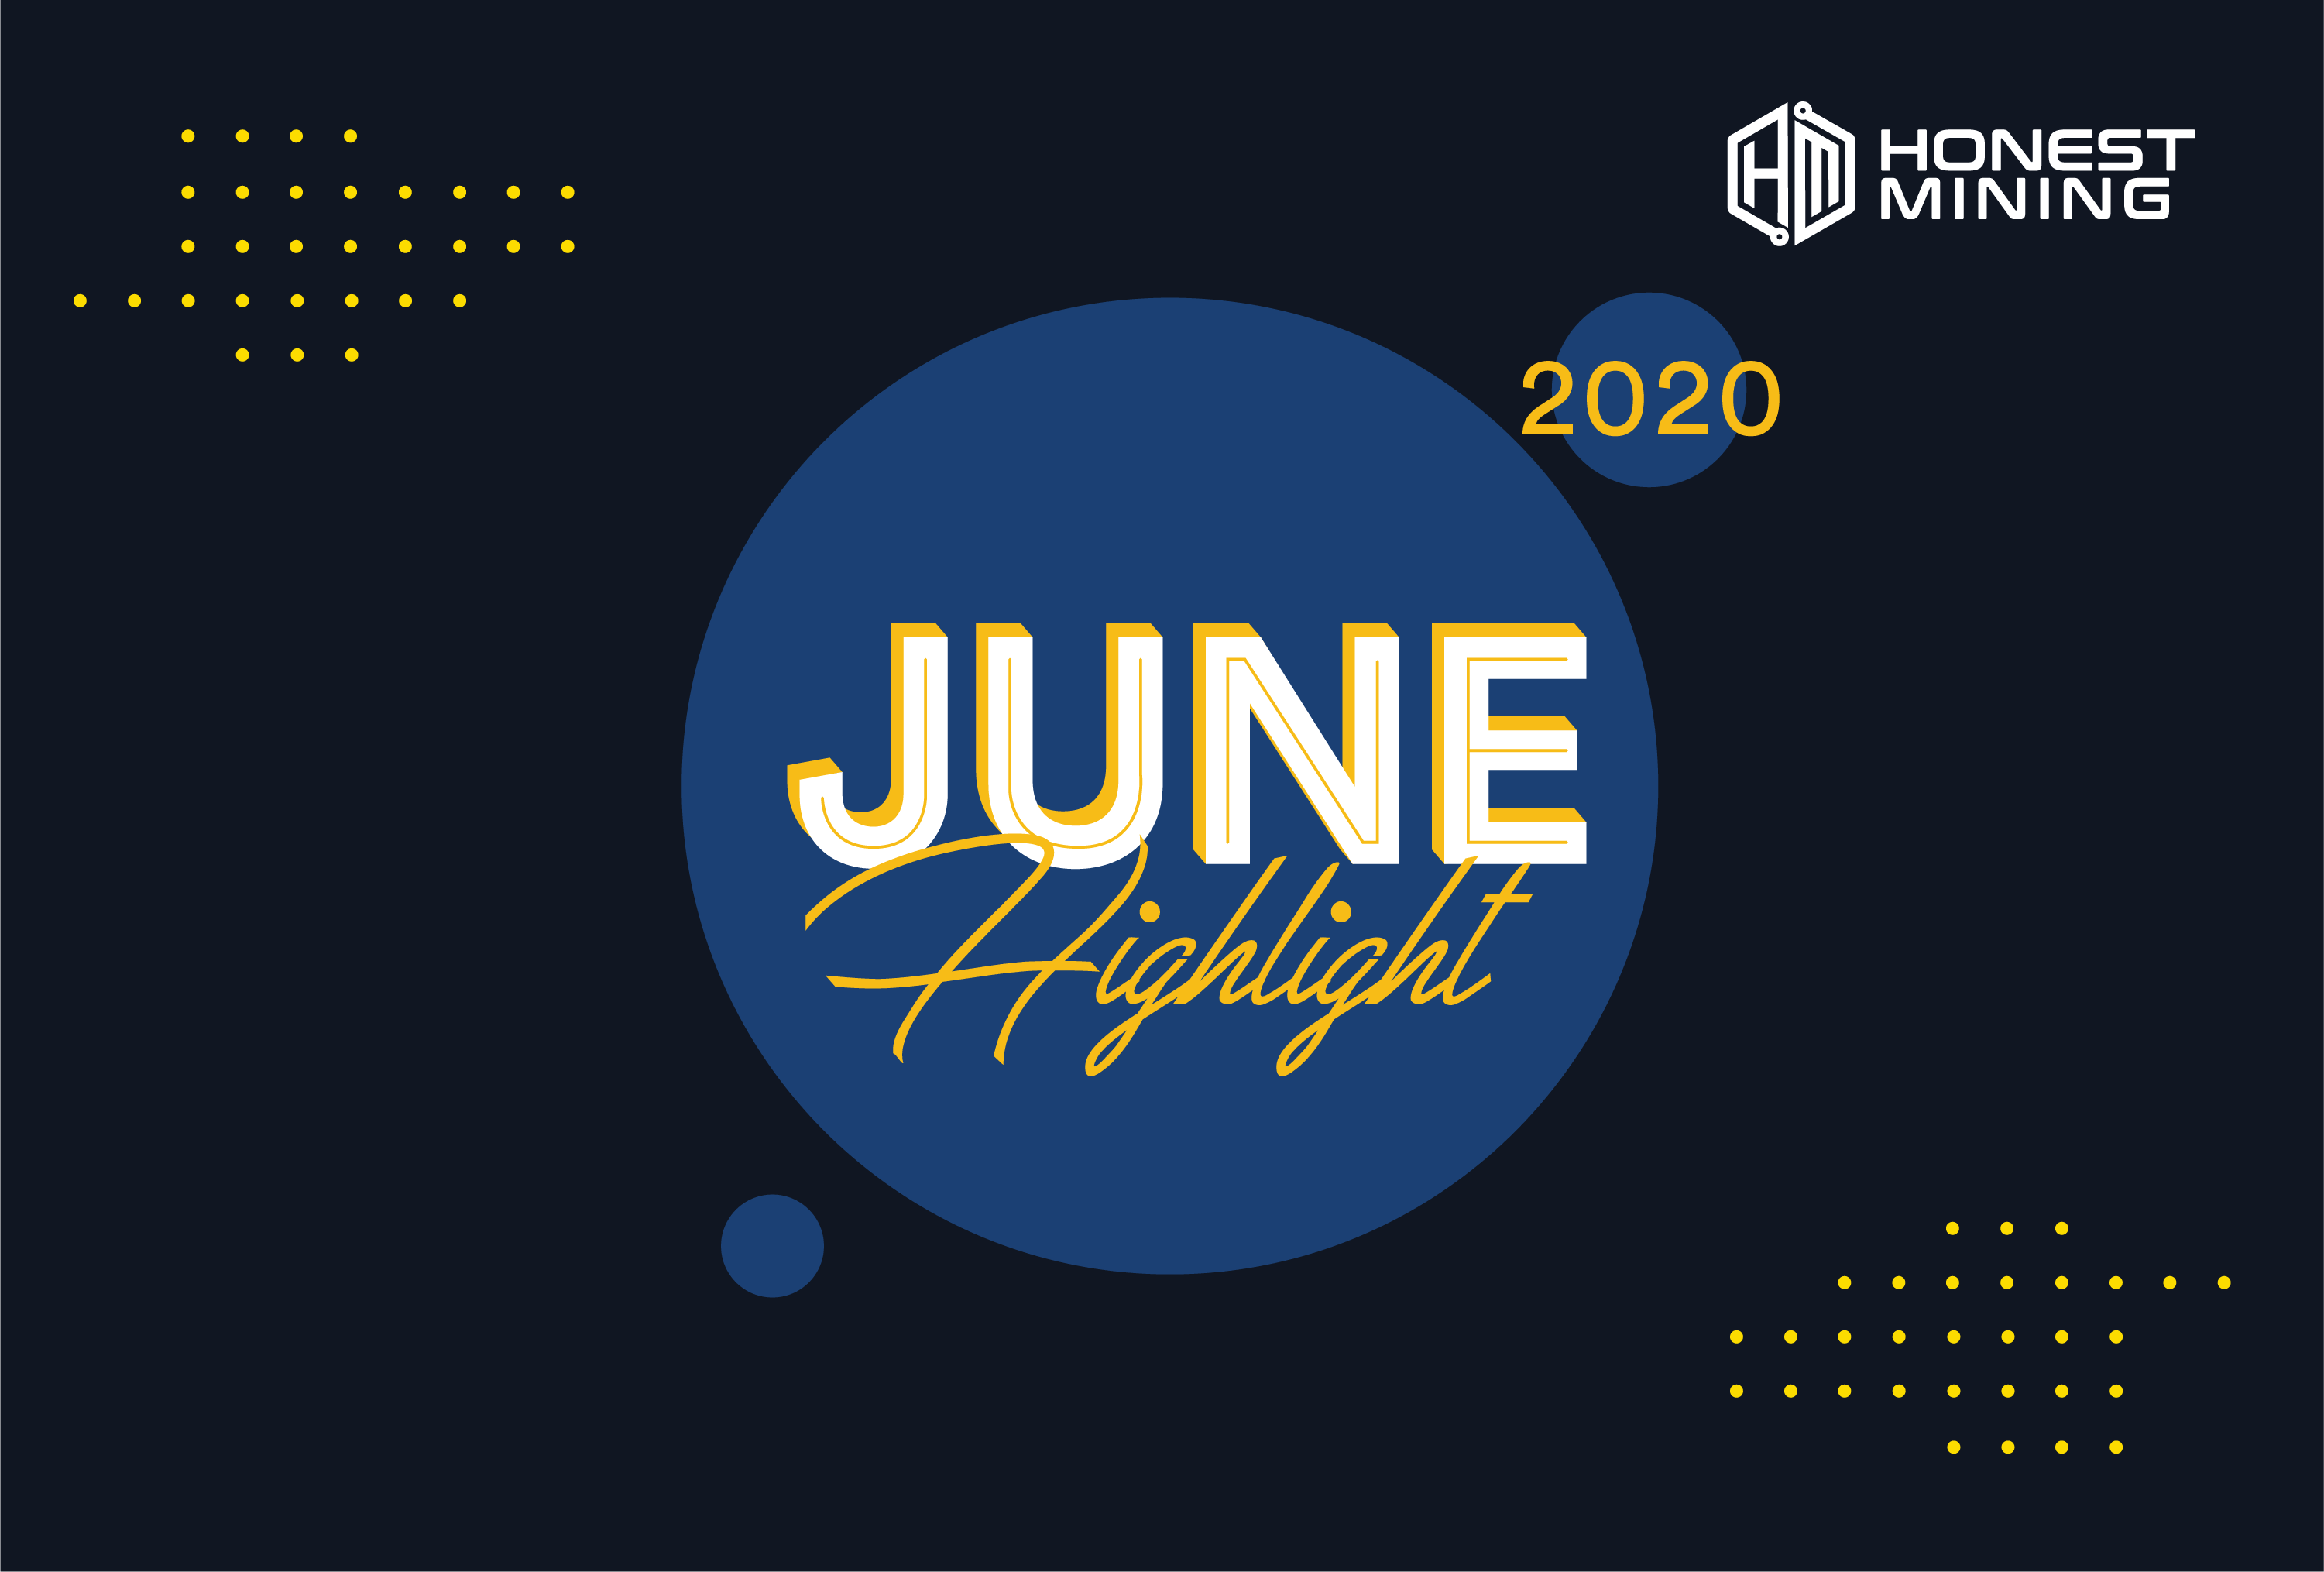 Highlight Juni 2020 Honest Mining